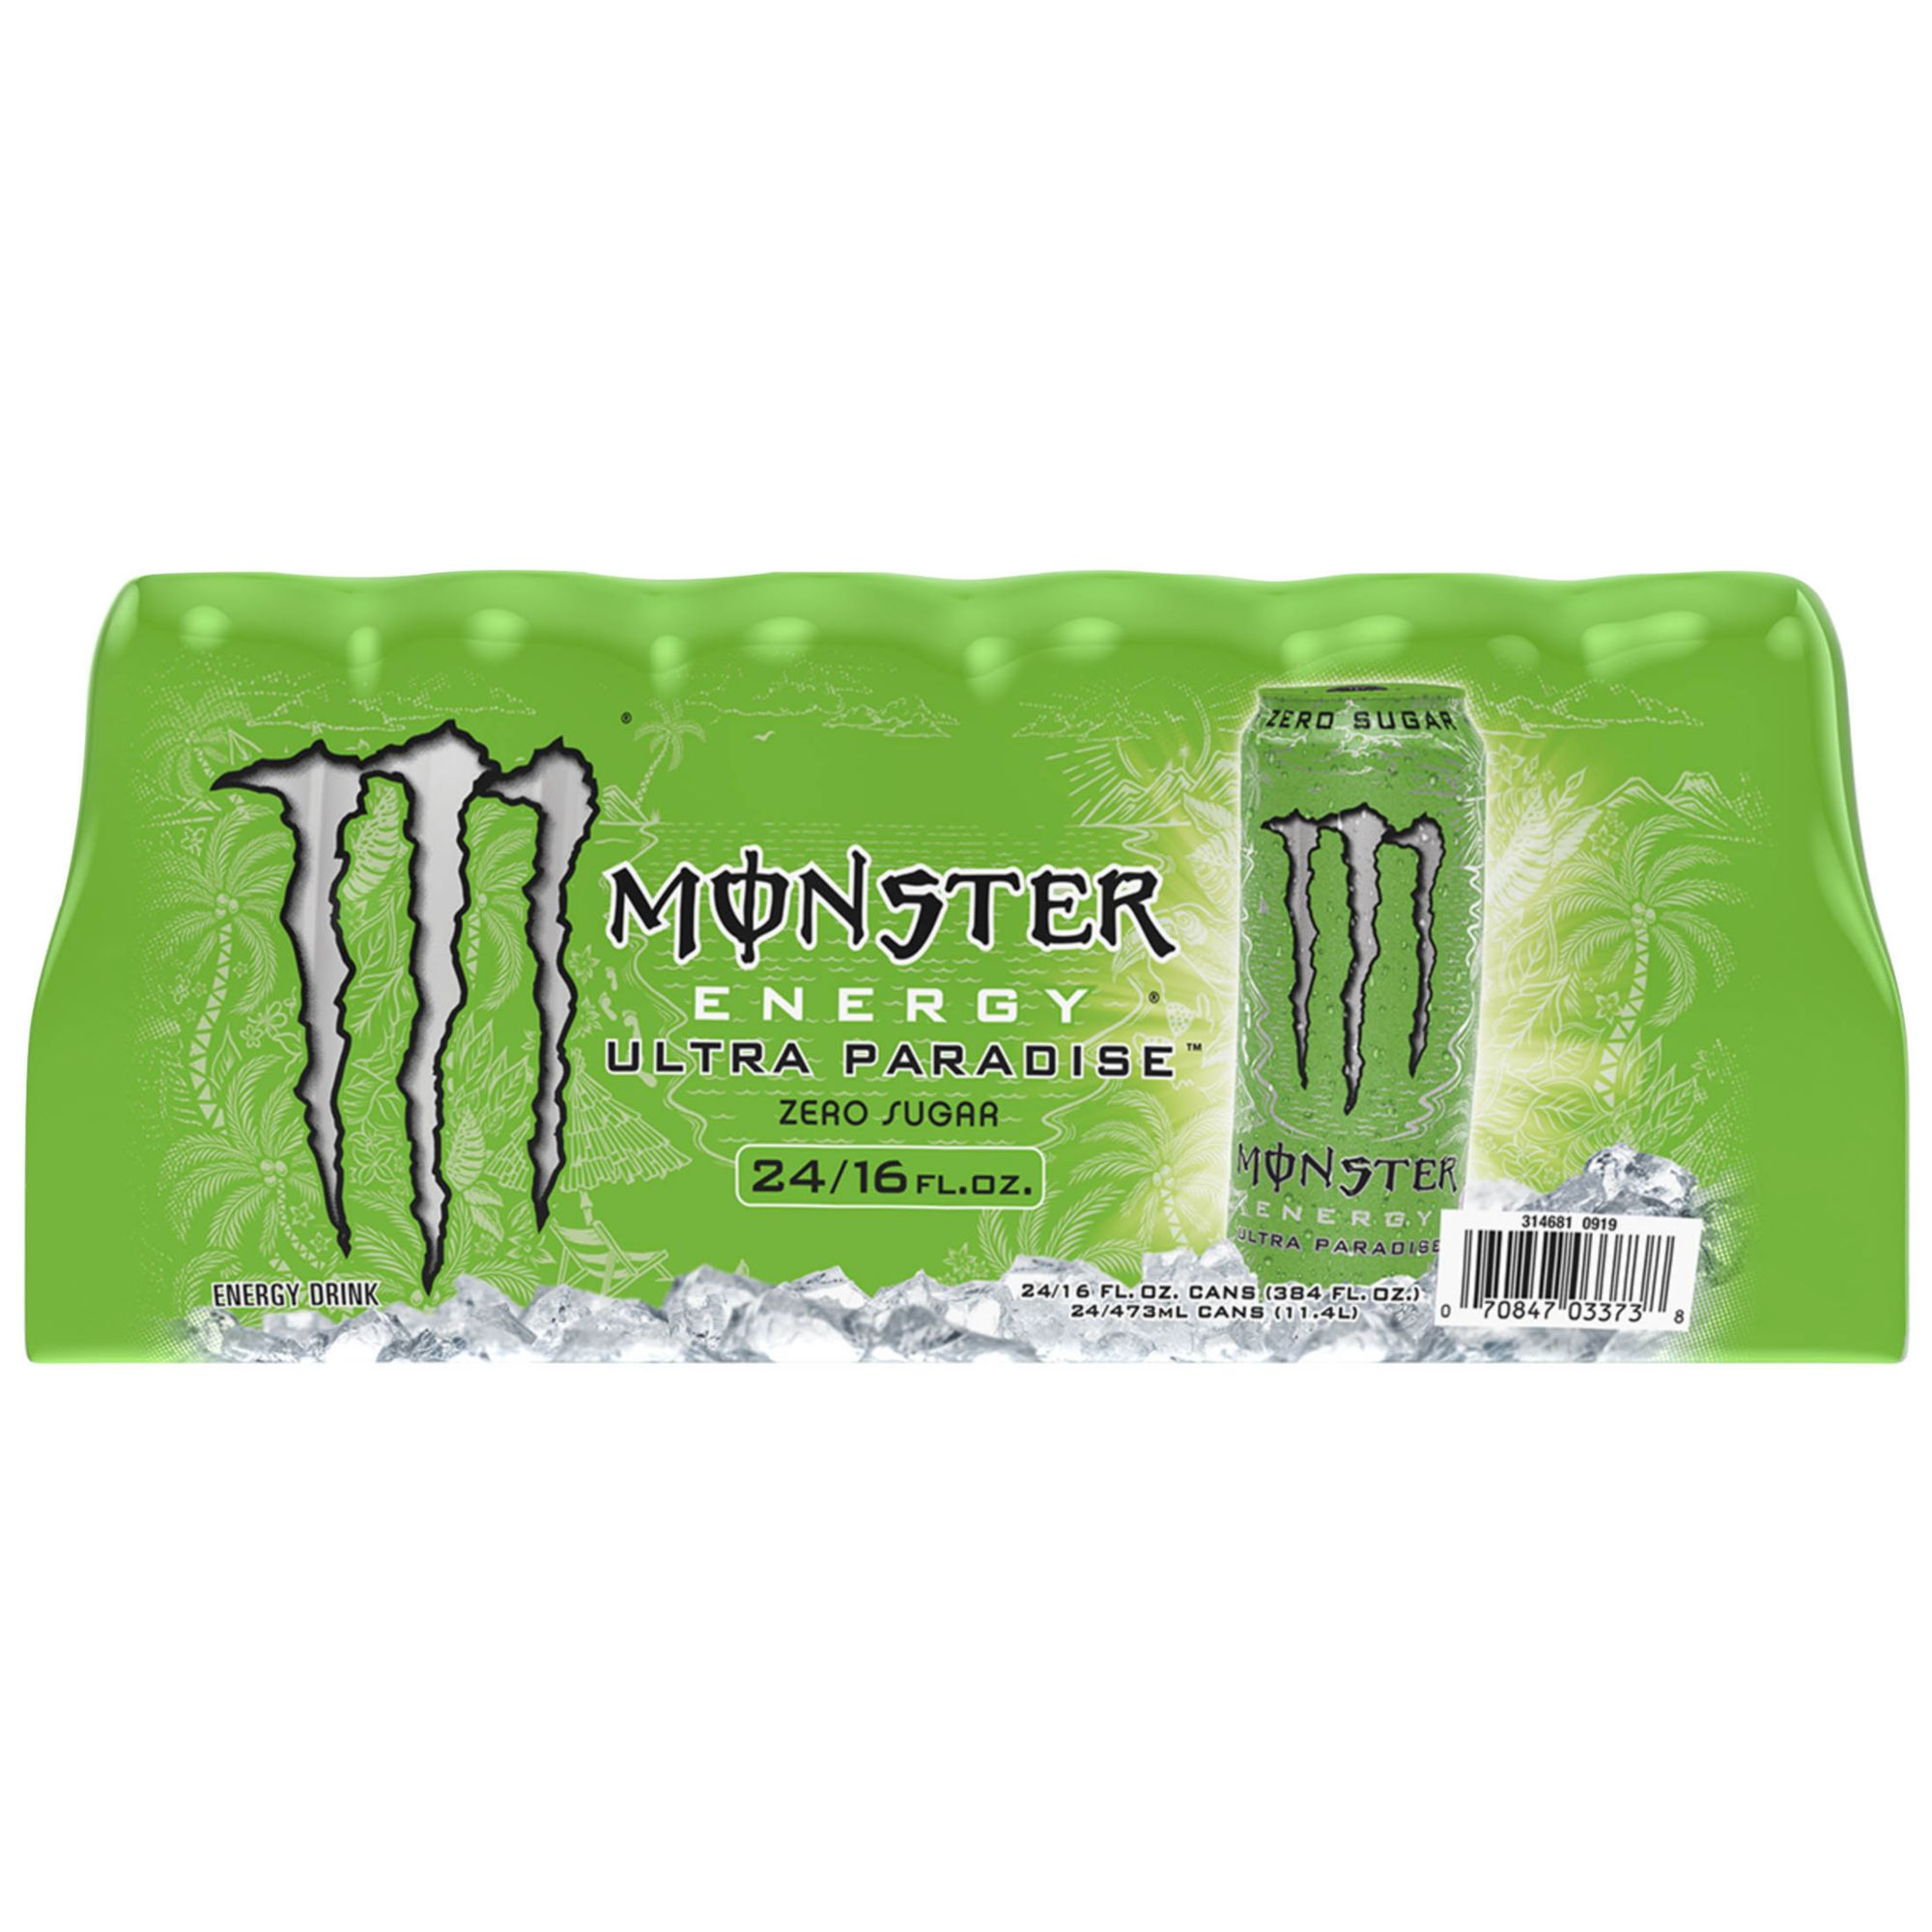 Monster Energy Ultra Paradise, 24 pk./16 oz.